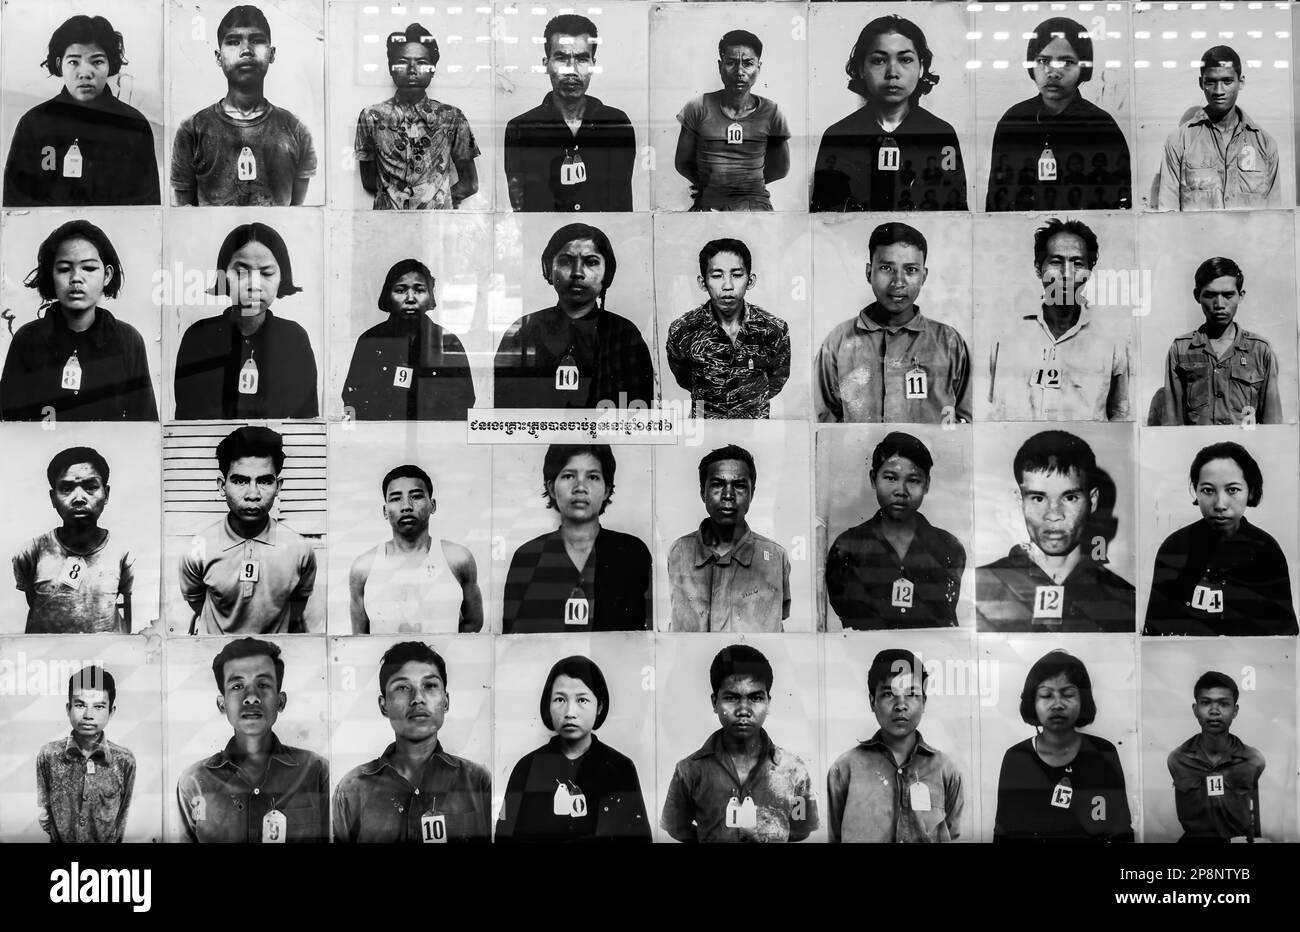 Porträts von Gefangenen, die nach der Ermordung durch die Roten Khmer im Tuol Sleng oder S-21 Folter- und Völkermord-Museum in Phnom Penh, Kambodscha, aufgenommen wurden Stockfoto